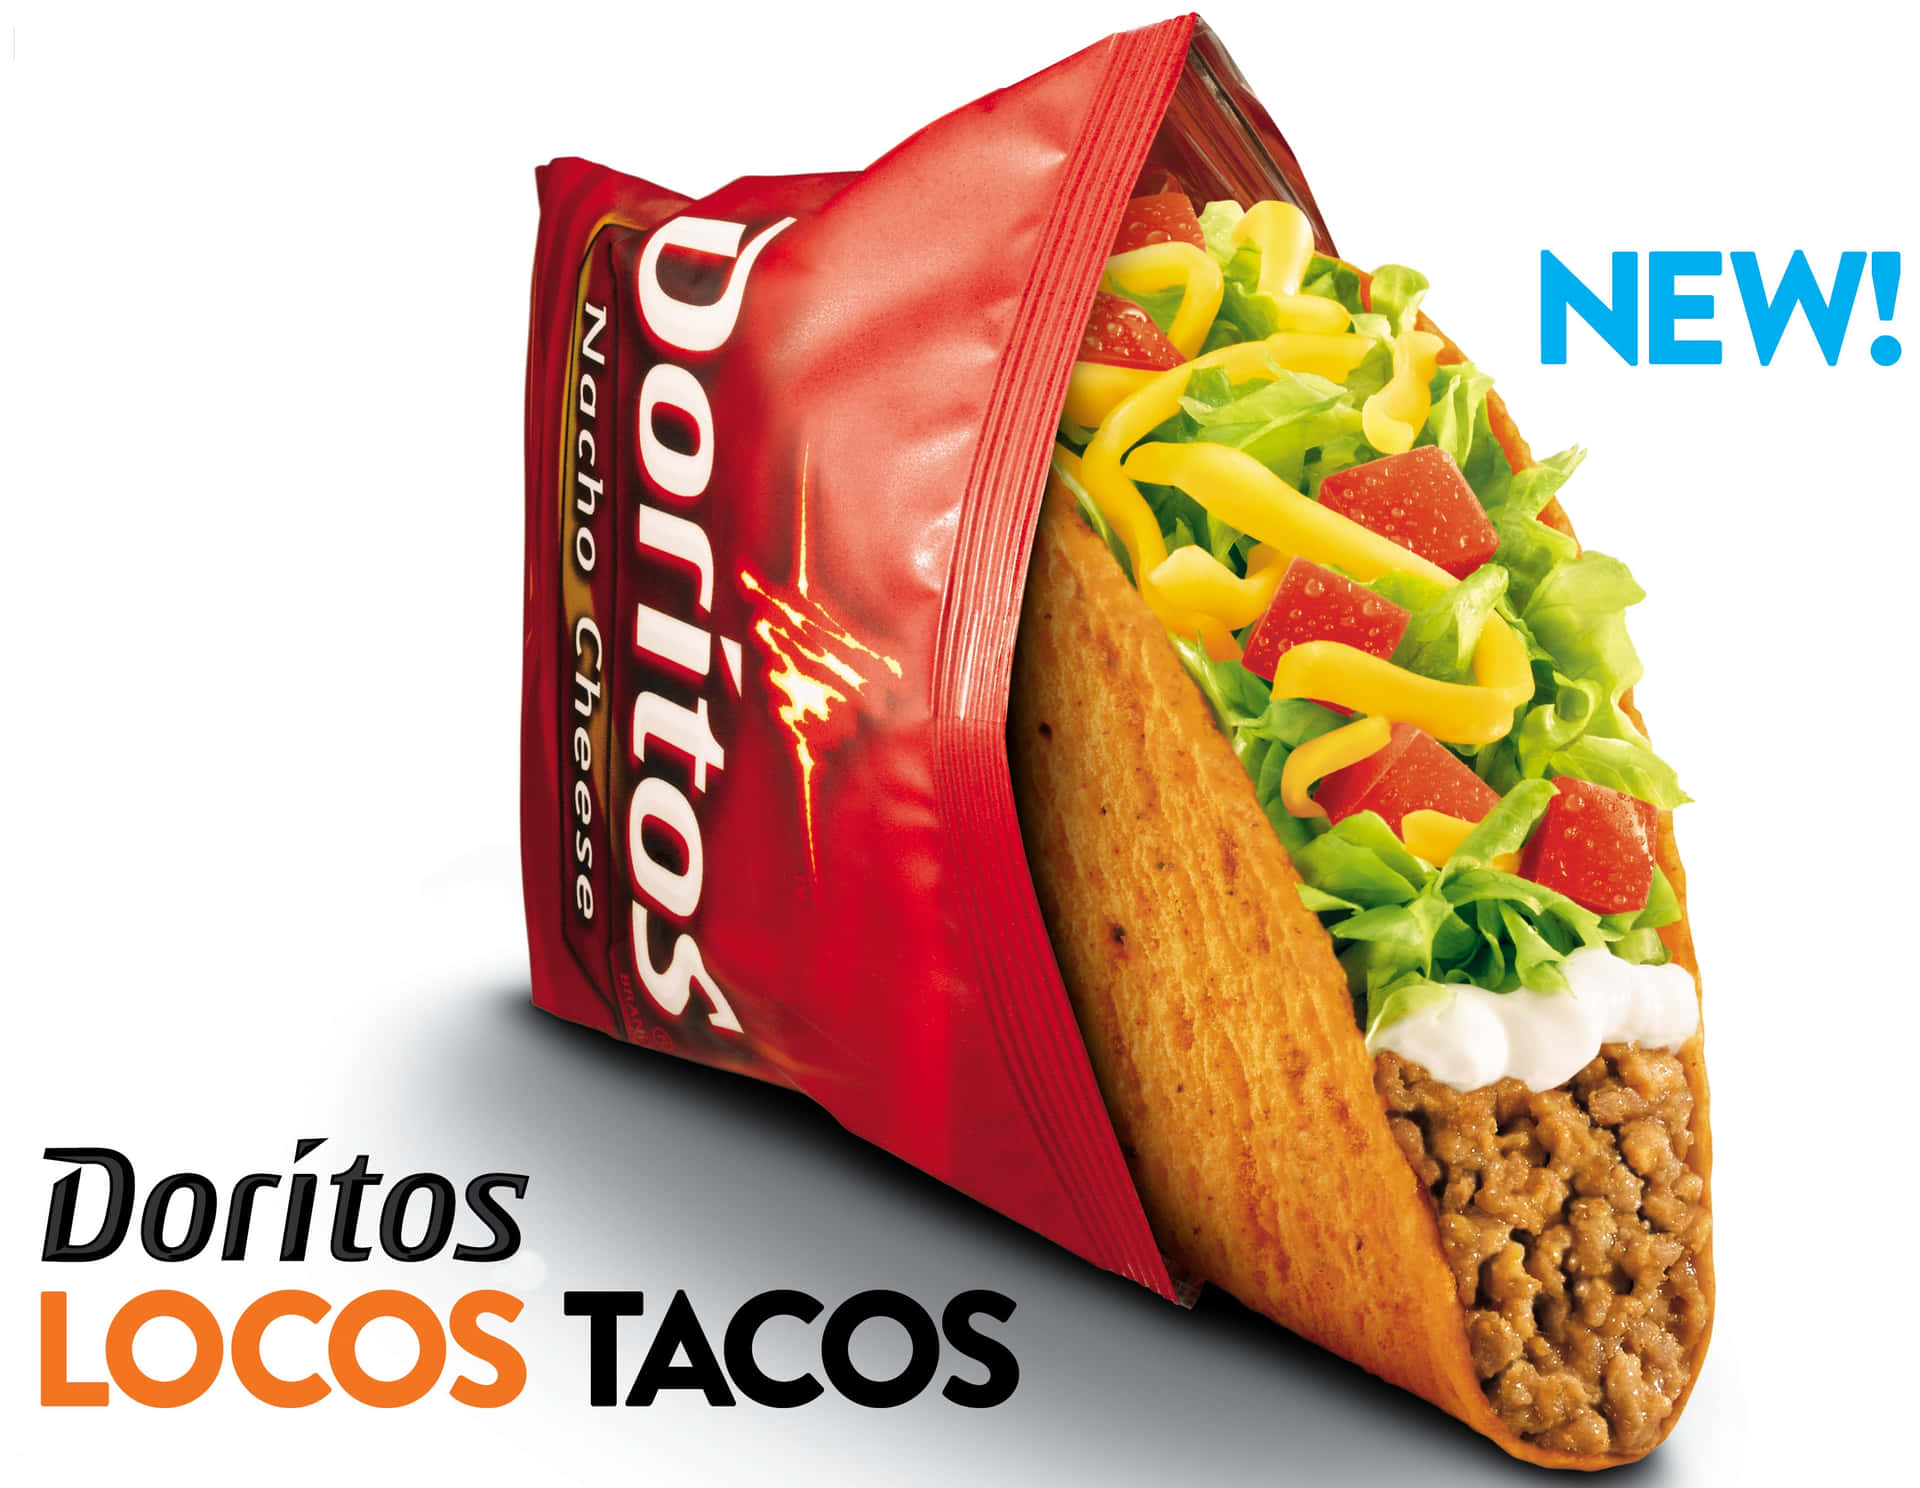 Tilfredsstildine Cravings Med Lækre Taco Bell Tacos.